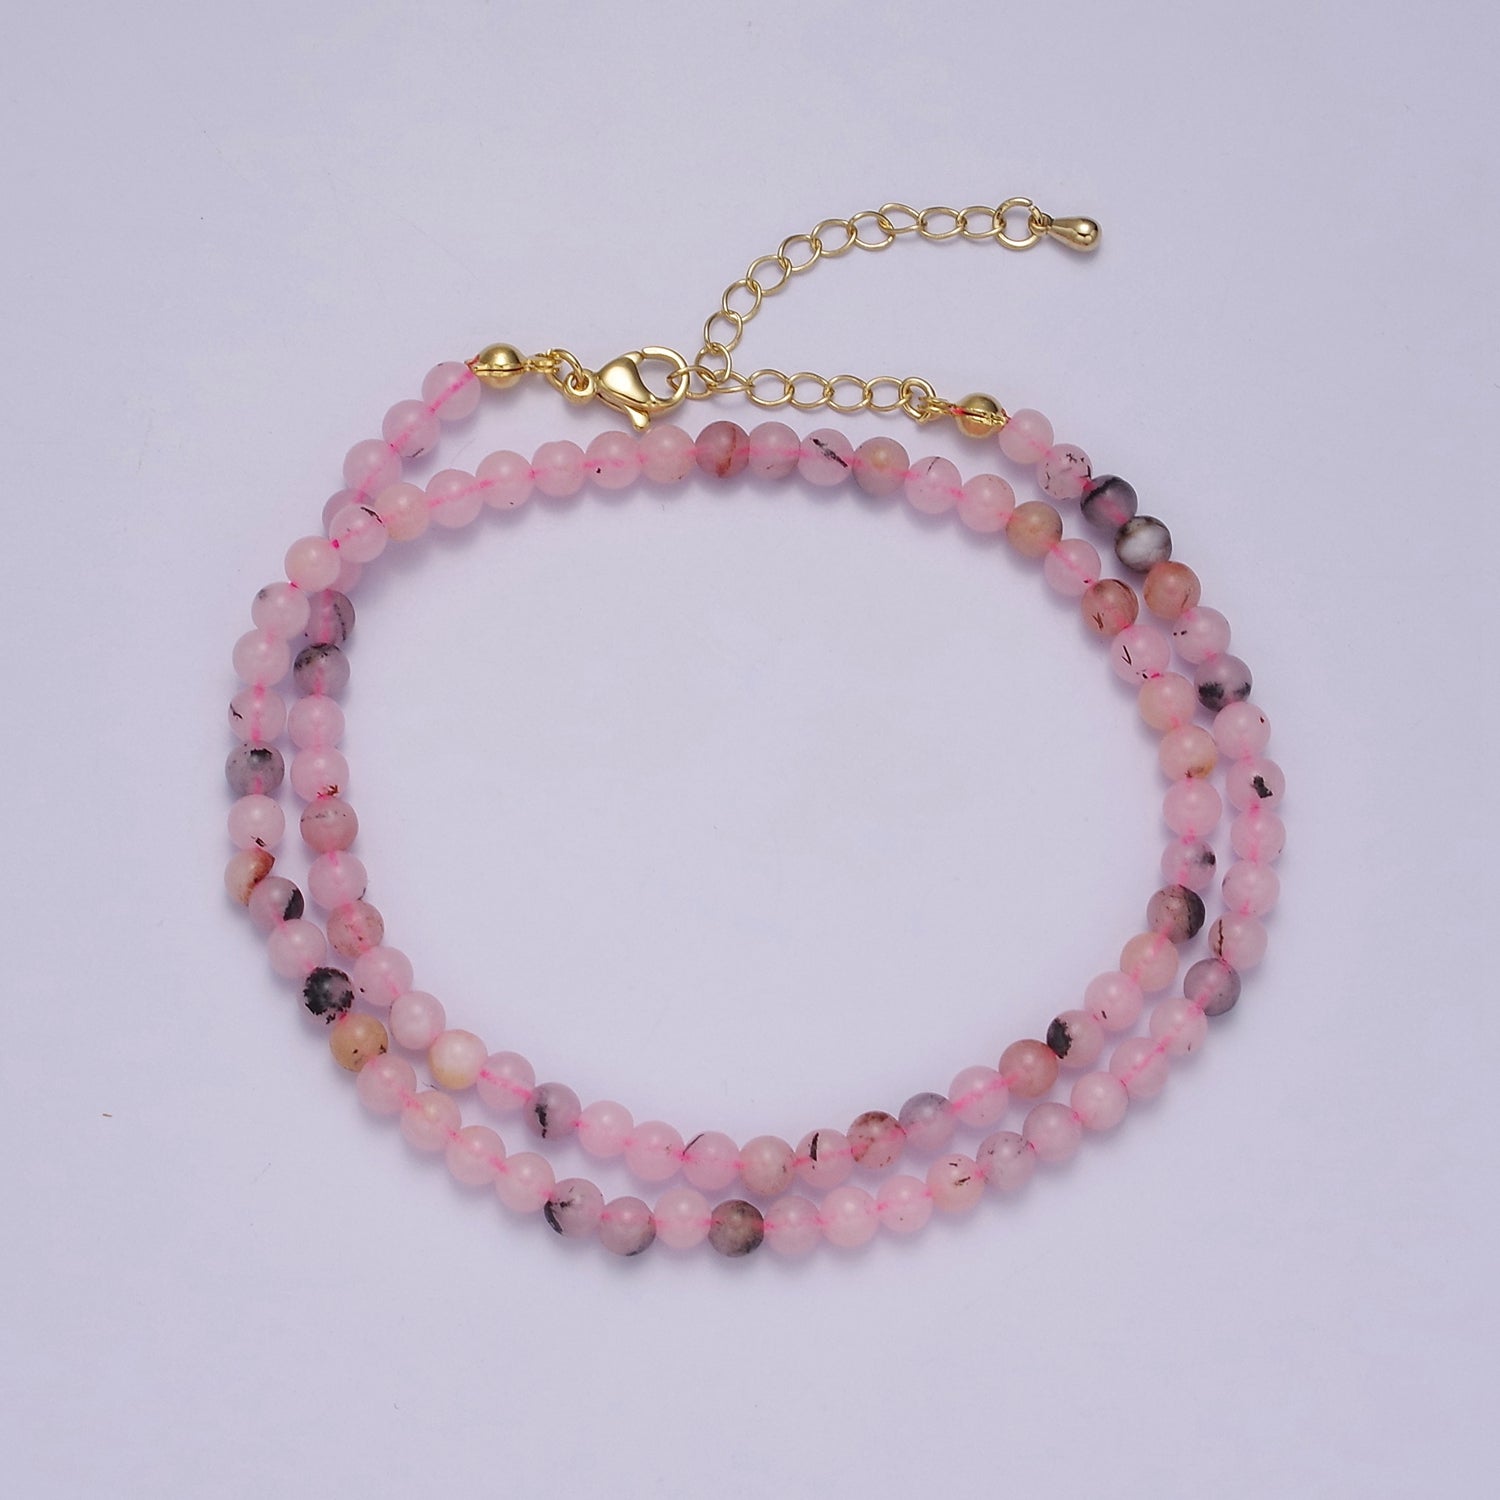 Handmade Pink Jade Bead Neklace for Layering Jewelry WA-876 - DLUXCA